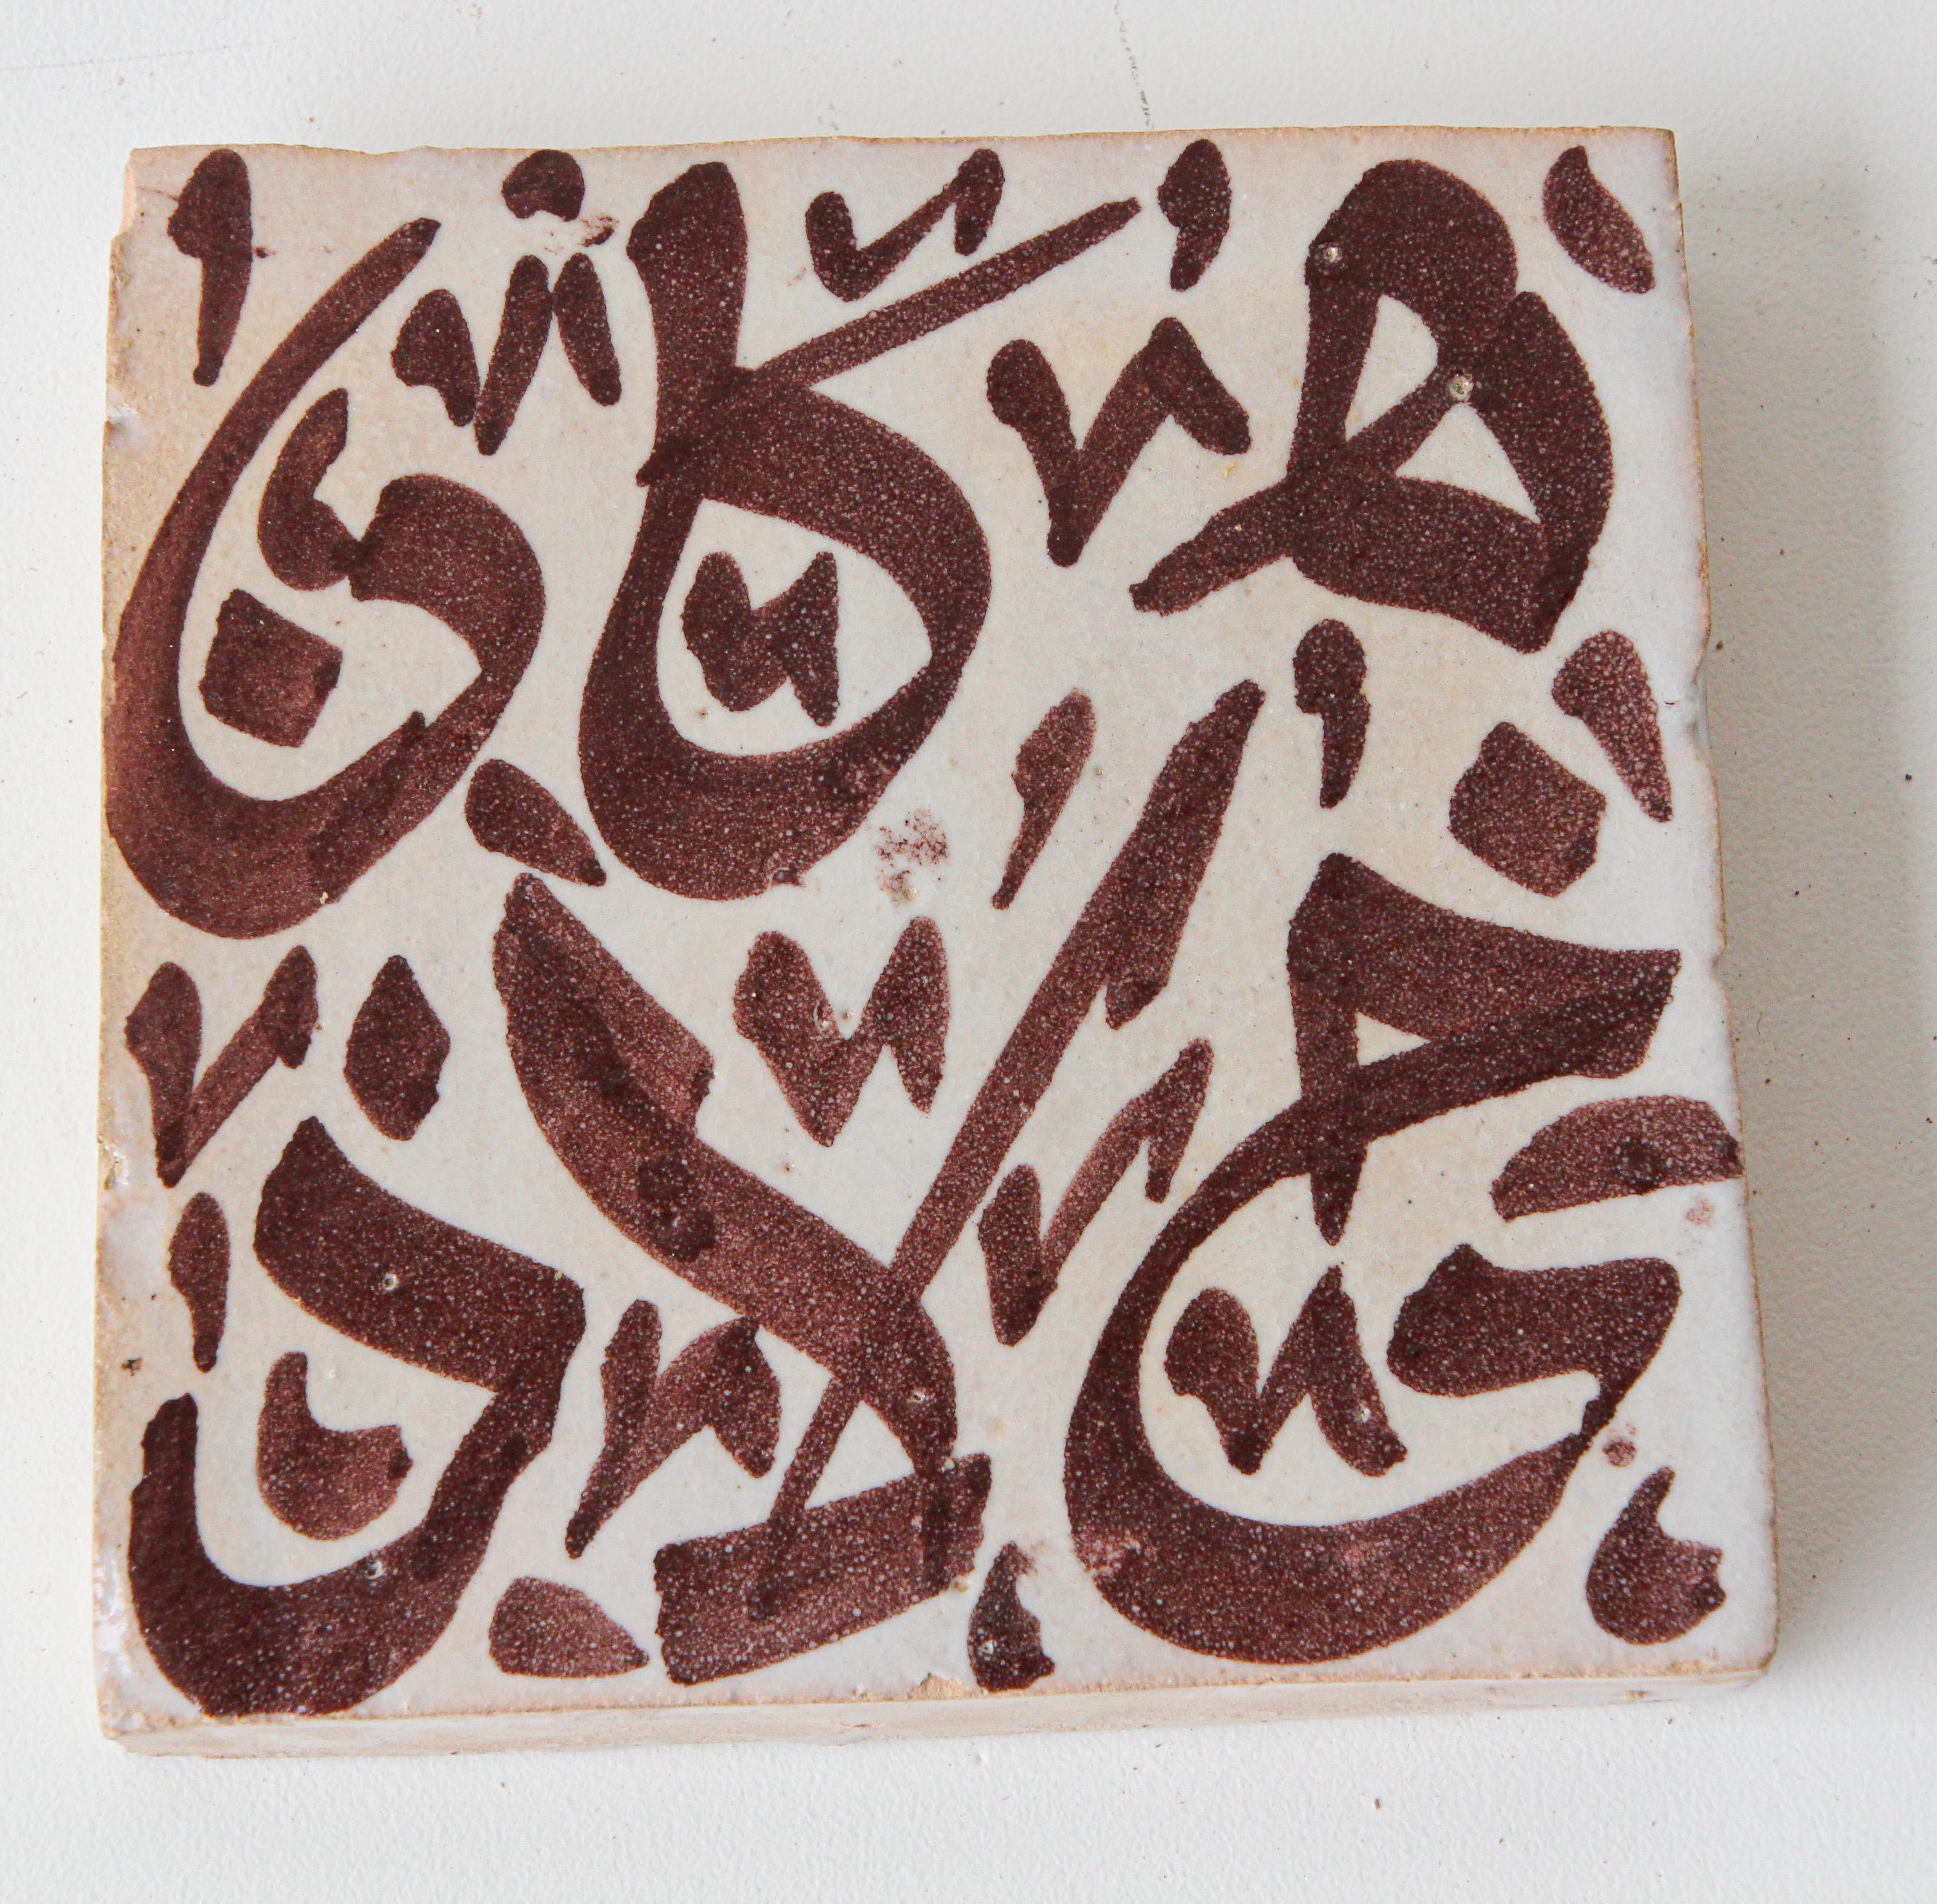 Marokkanische handgefertigte dekorative Fliese mit handgemalter arabischer Schrift in Braun auf elfenbeinfarbener Craquelé-glasierter Keramik.
Arabische Schrift auf Keramikfliese, handbemalt von einem Künstler in Fez, Marokko.
Großes zelliges